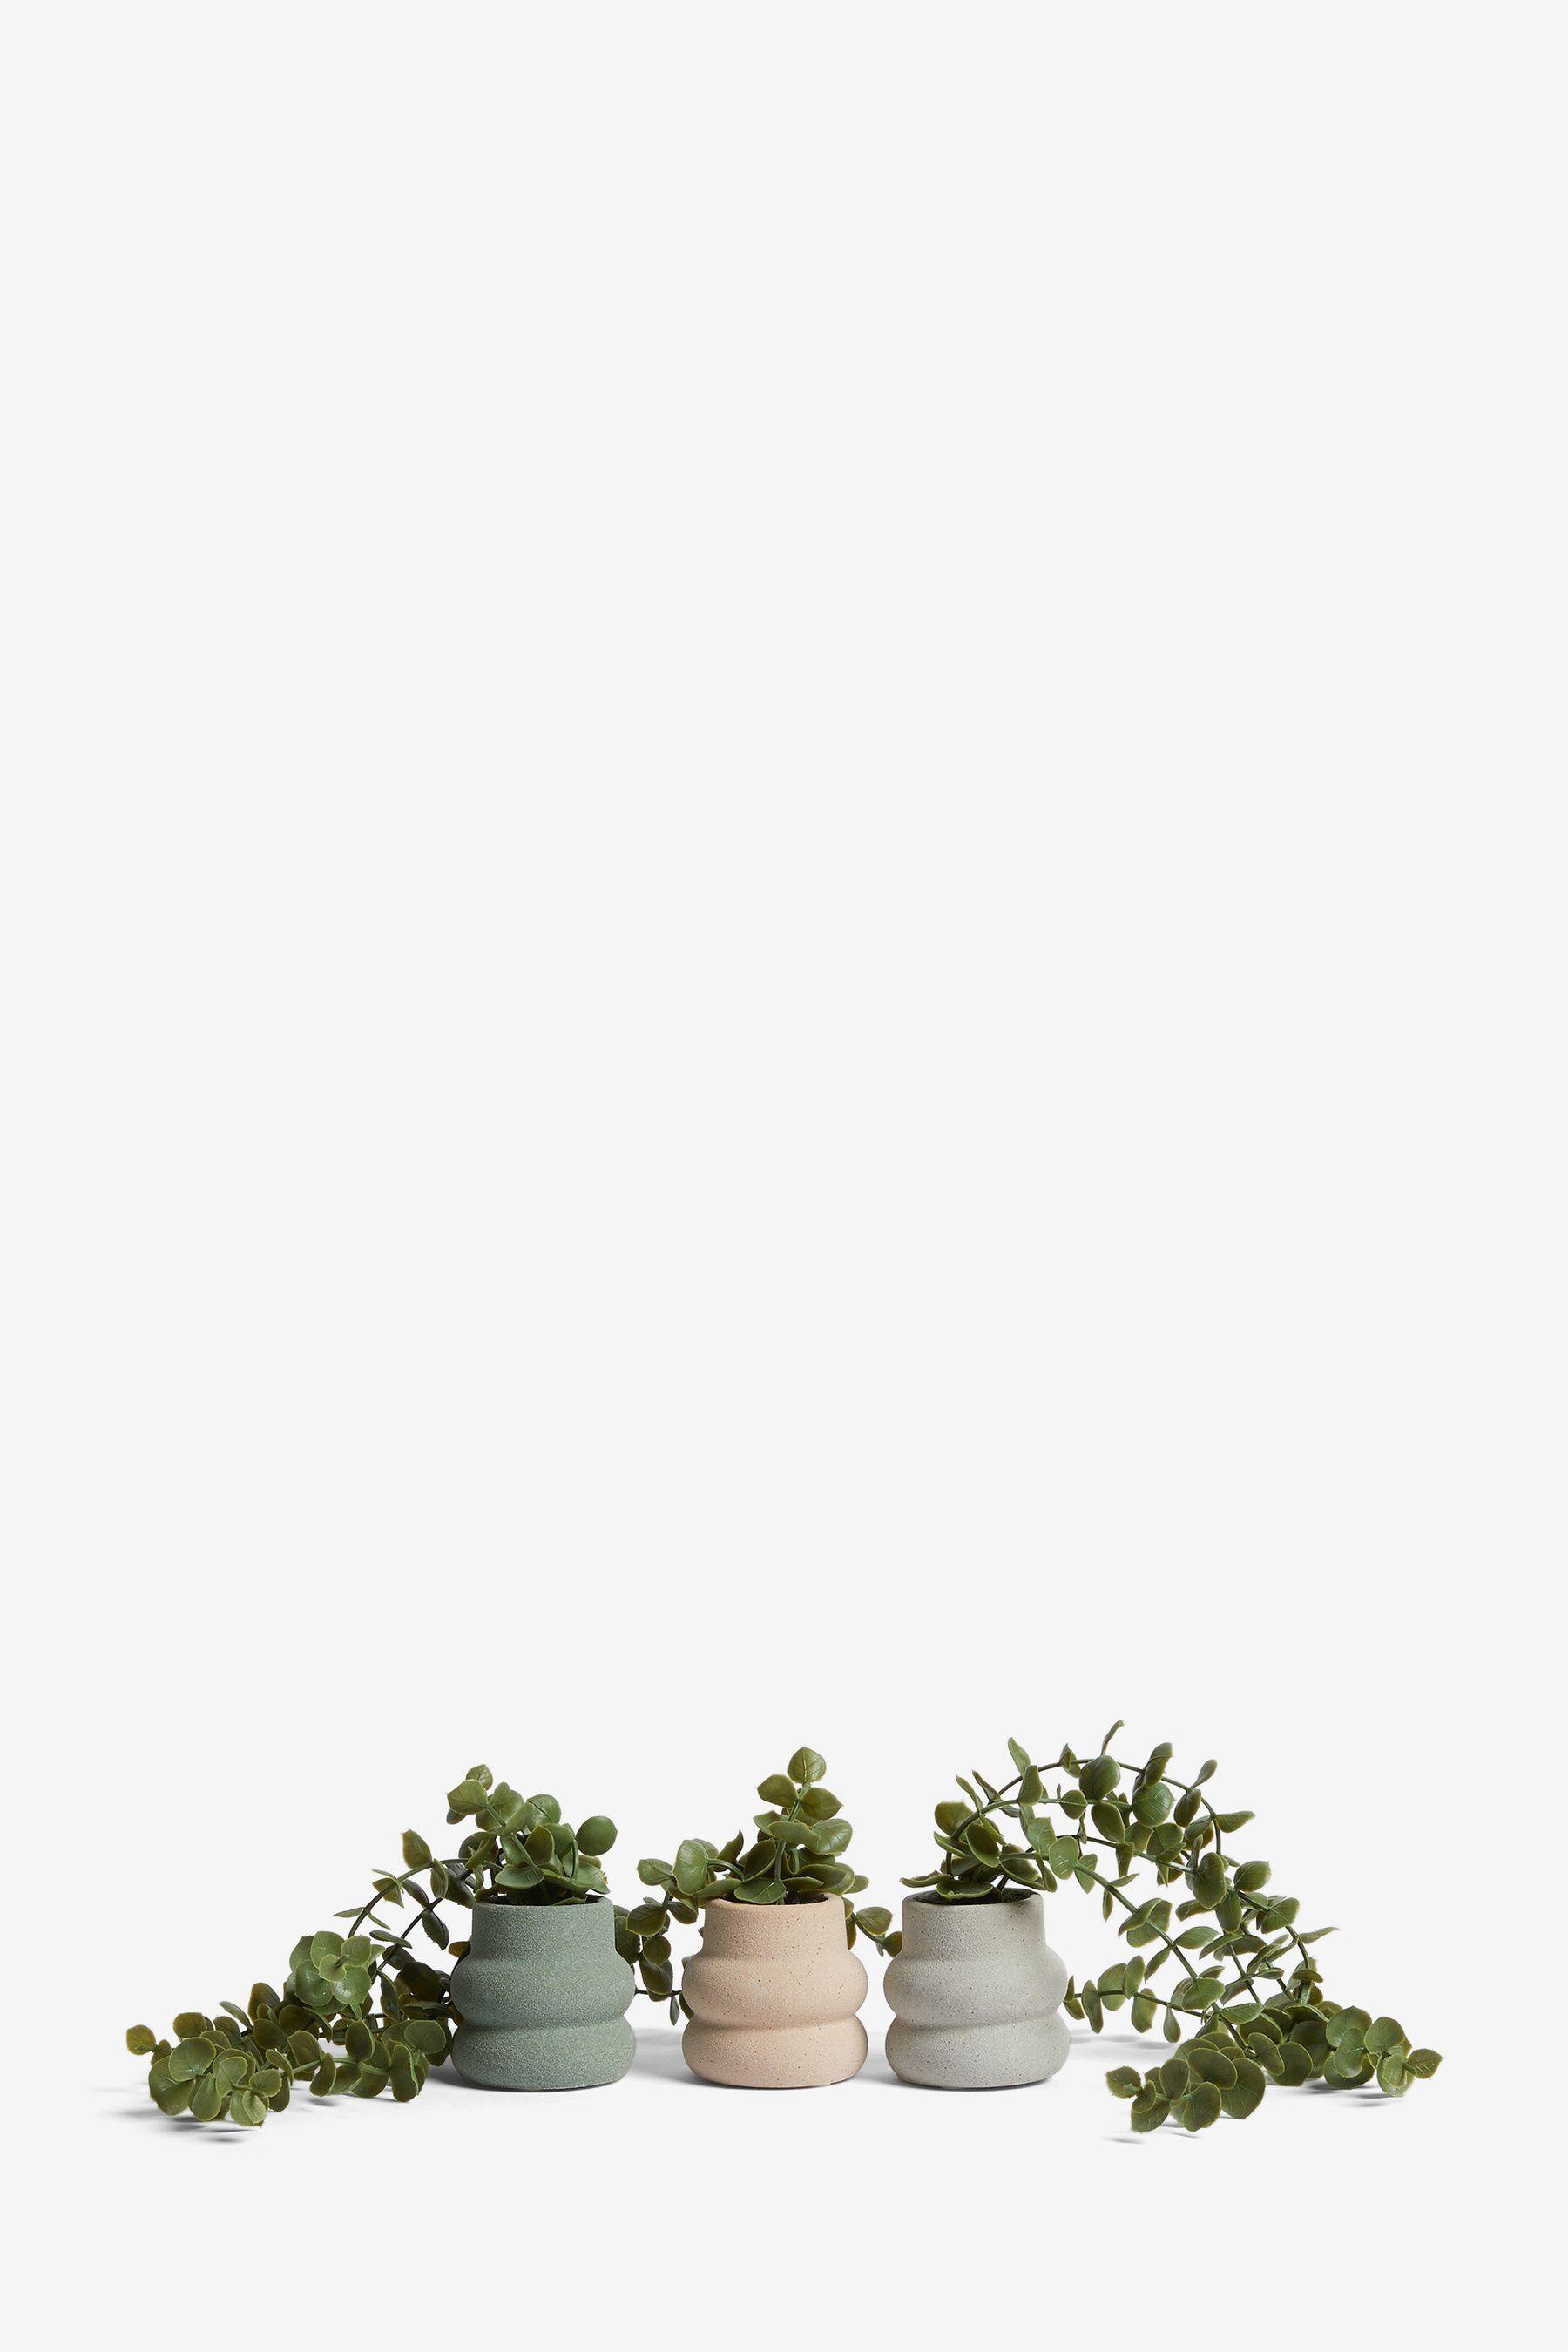 Kunstpflanze Kunstranken in einfarbigen Next Set, Keramiktöpfen, 3er